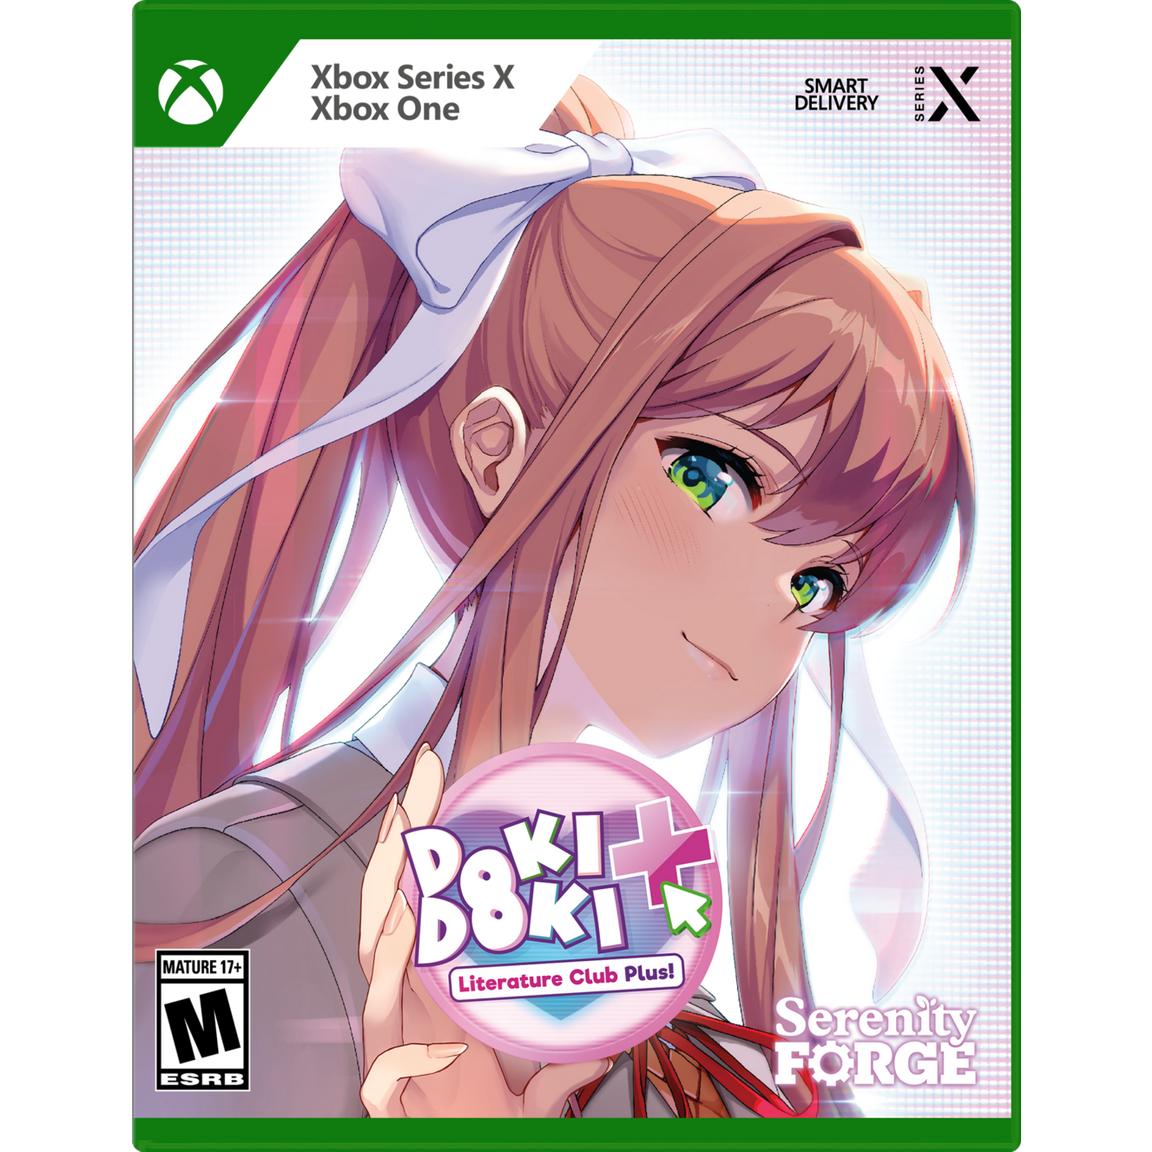 Doki Doki Literature Club Plus Premium Physical Edition - Xbox Series X, Xbox One